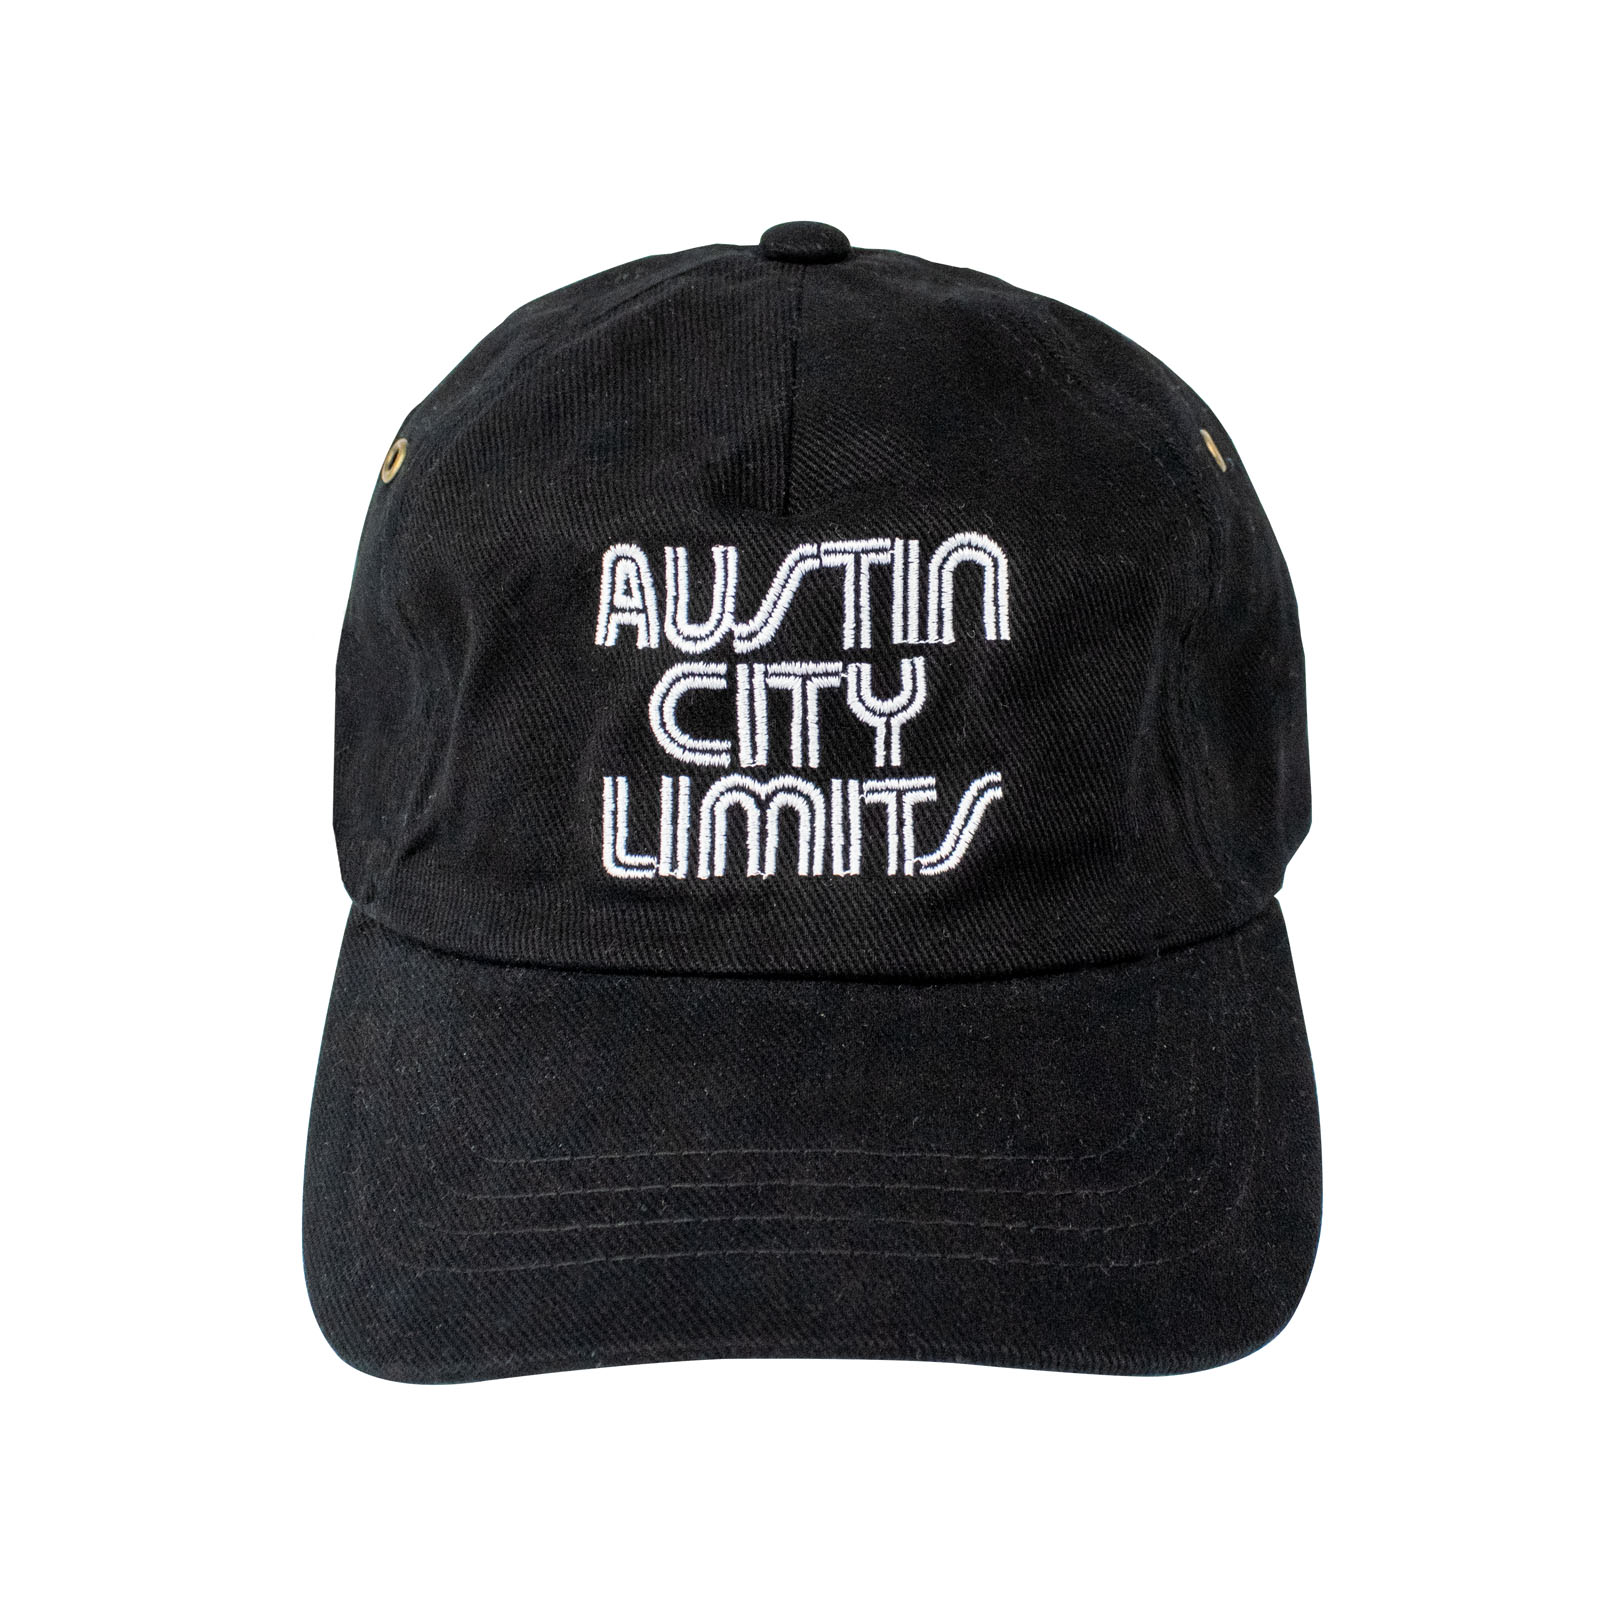 Austin City Limits Cotton Hat - Black